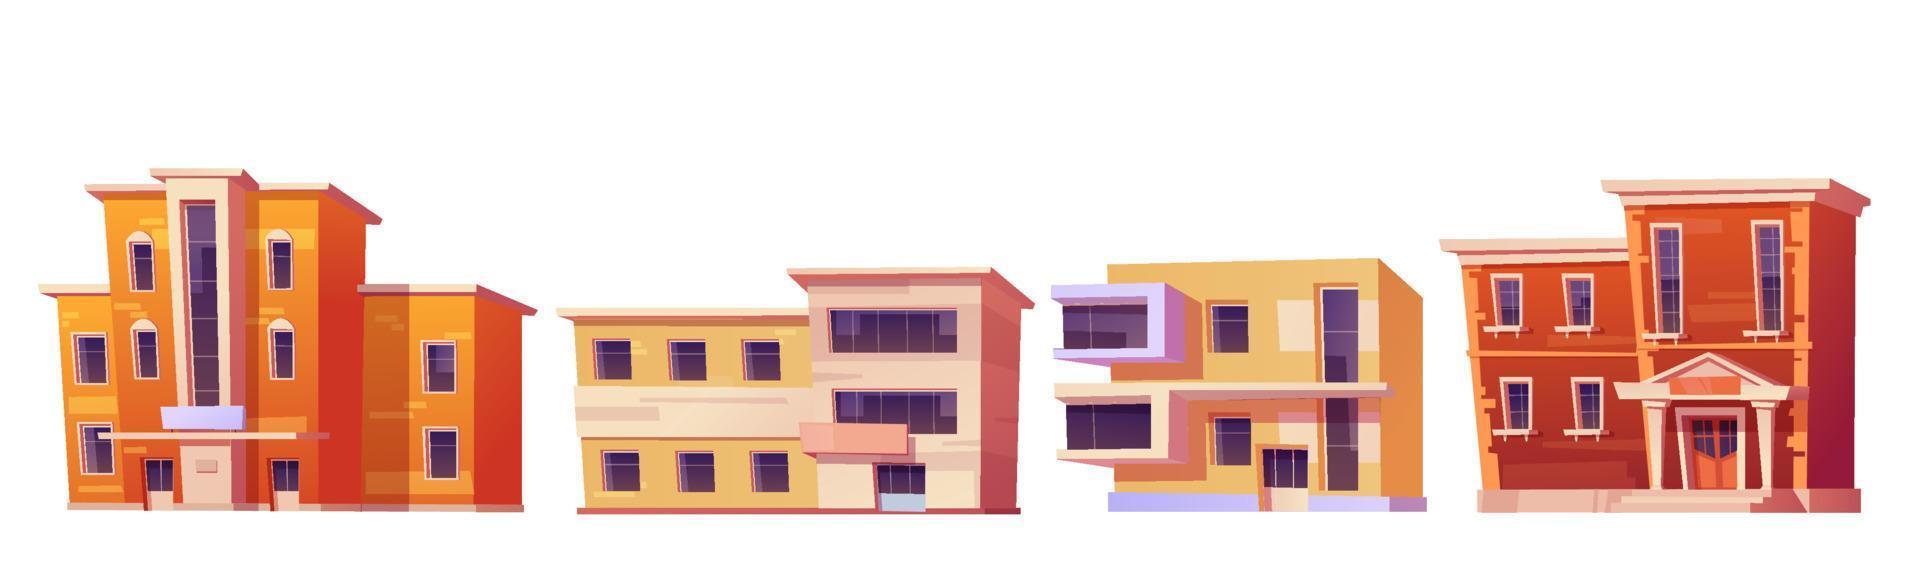 ensemble de dessins animés vectoriels de bâtiments de la ville vecteur